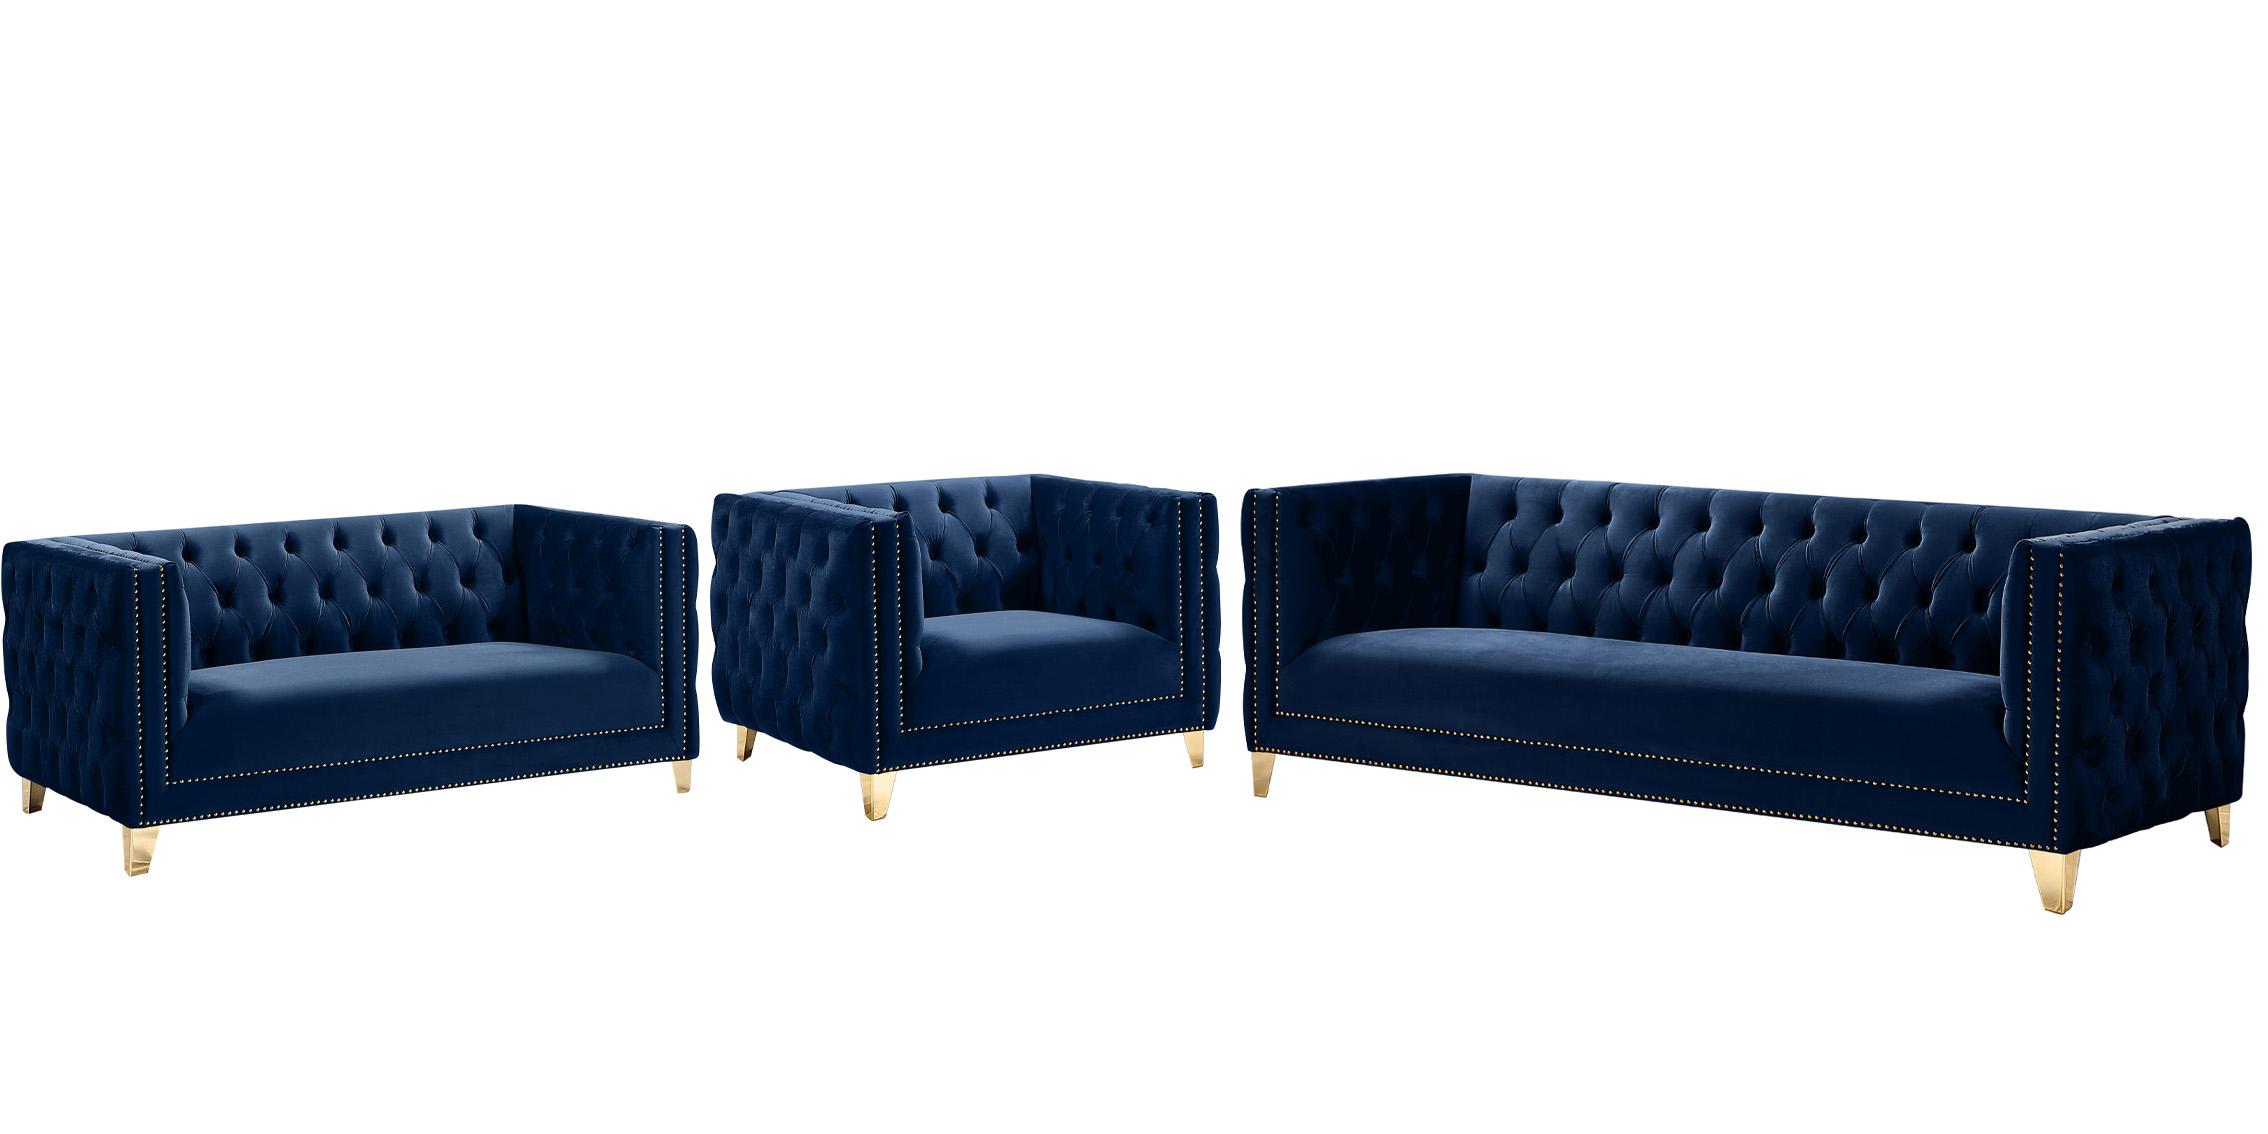 

    
Glam Navy Velvet Sofa Set 3Pcs MICHELLE 652Navy Meridian Contemporary Modern
